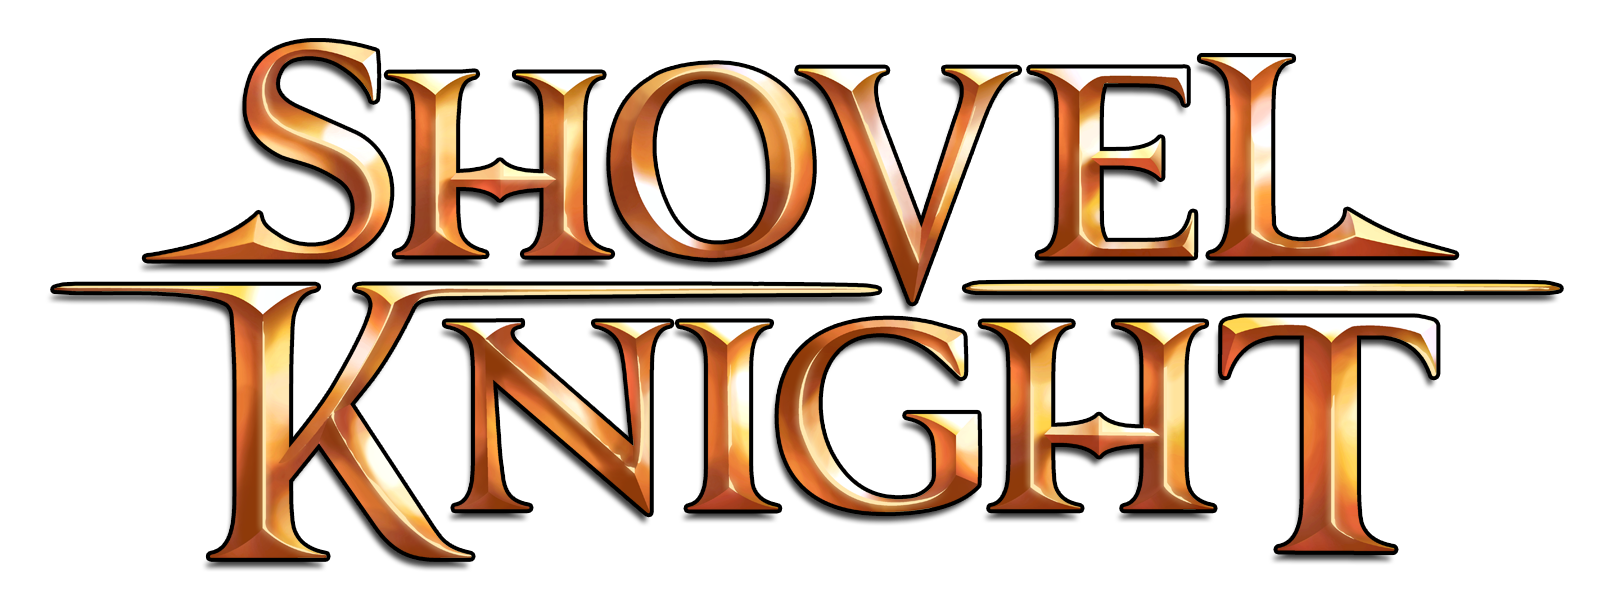 shovelknight_logo